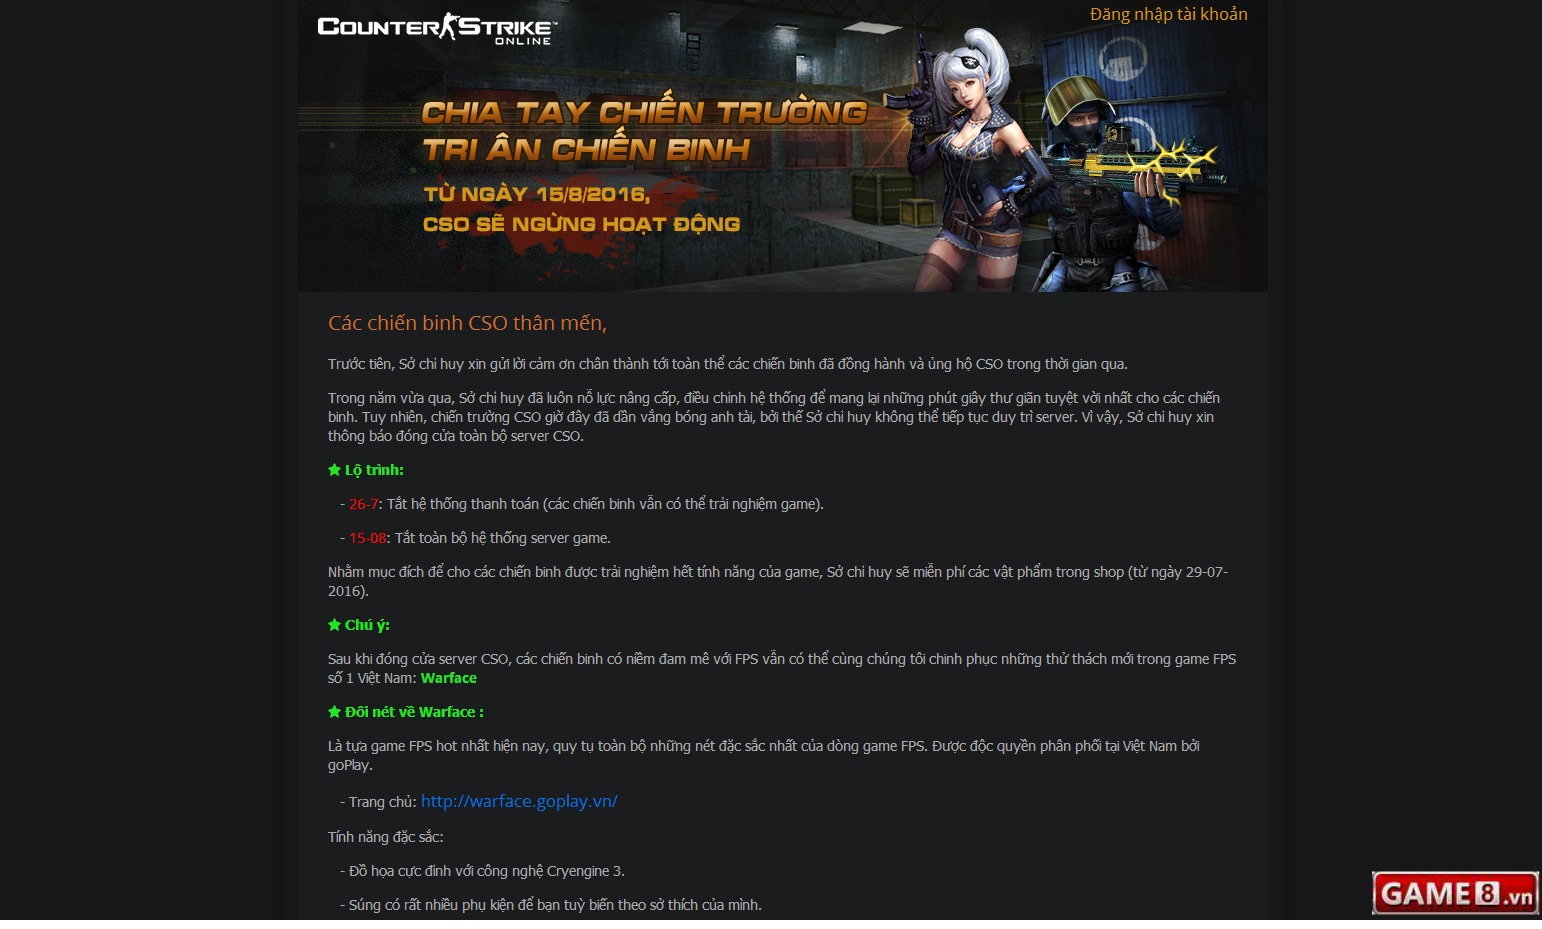 Counter-Strike Online công bố đóng cửa